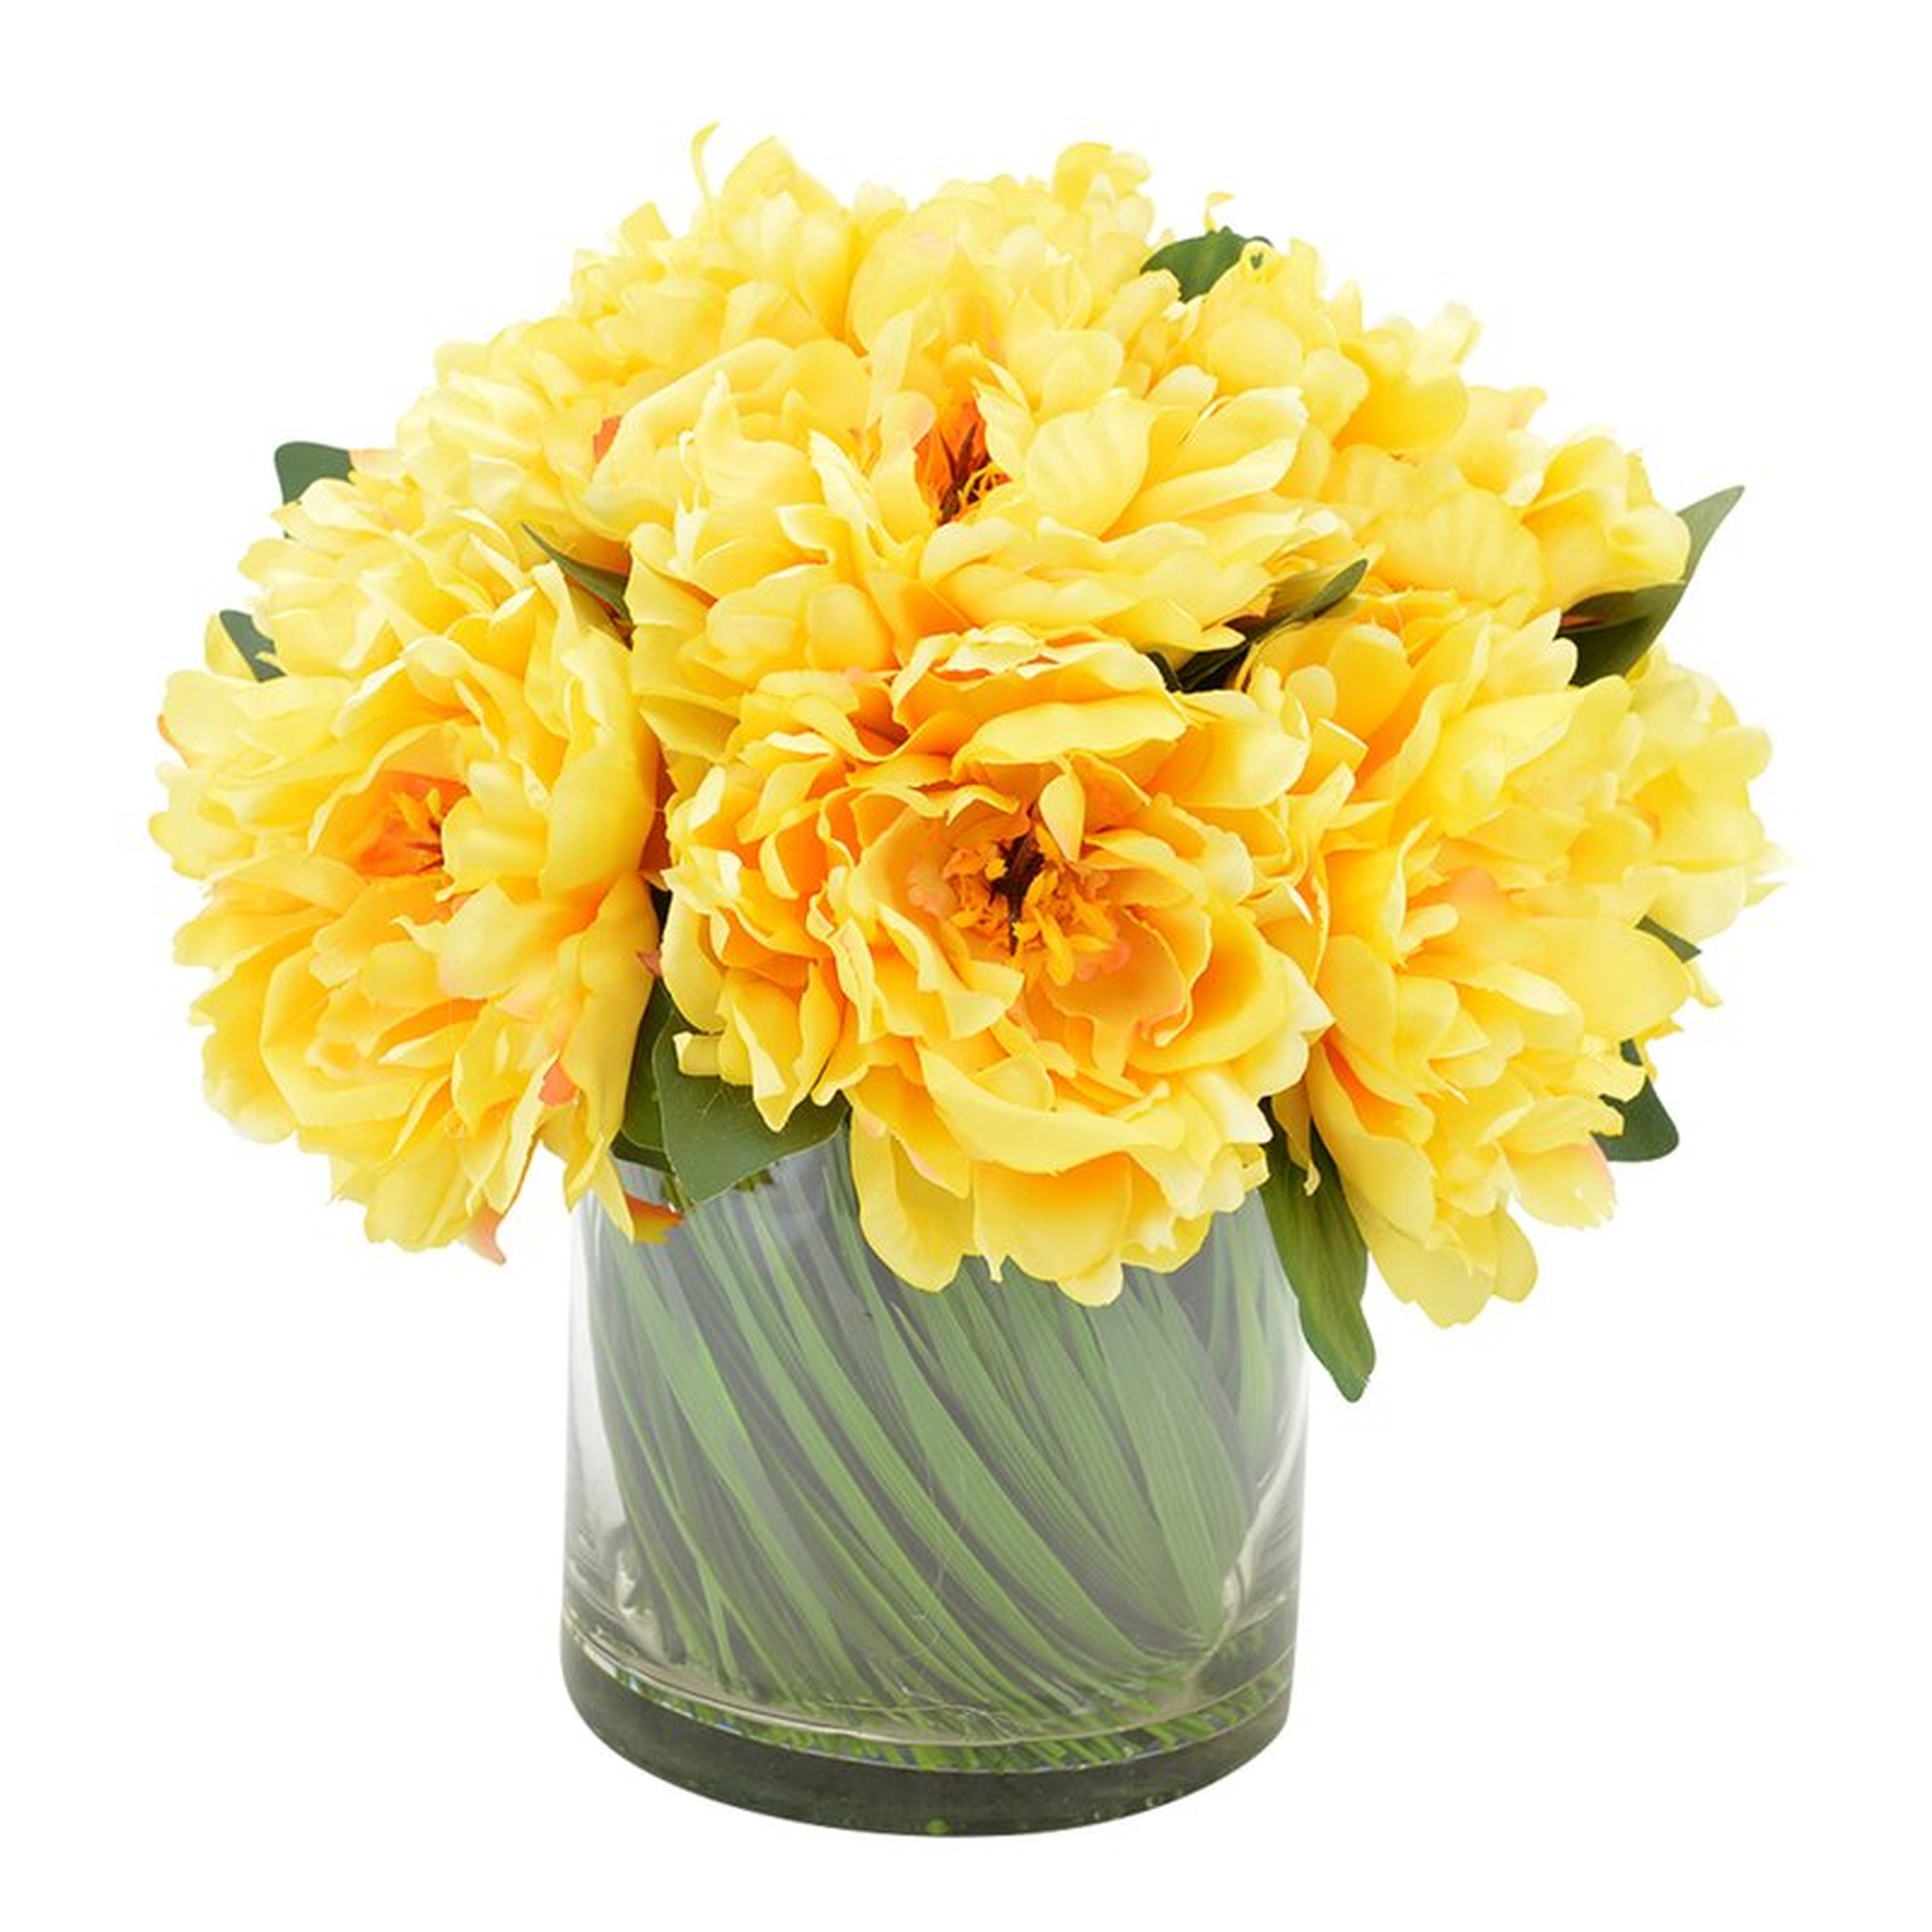 Peonies Floral Arrangement in Vase - yellow - Wayfair